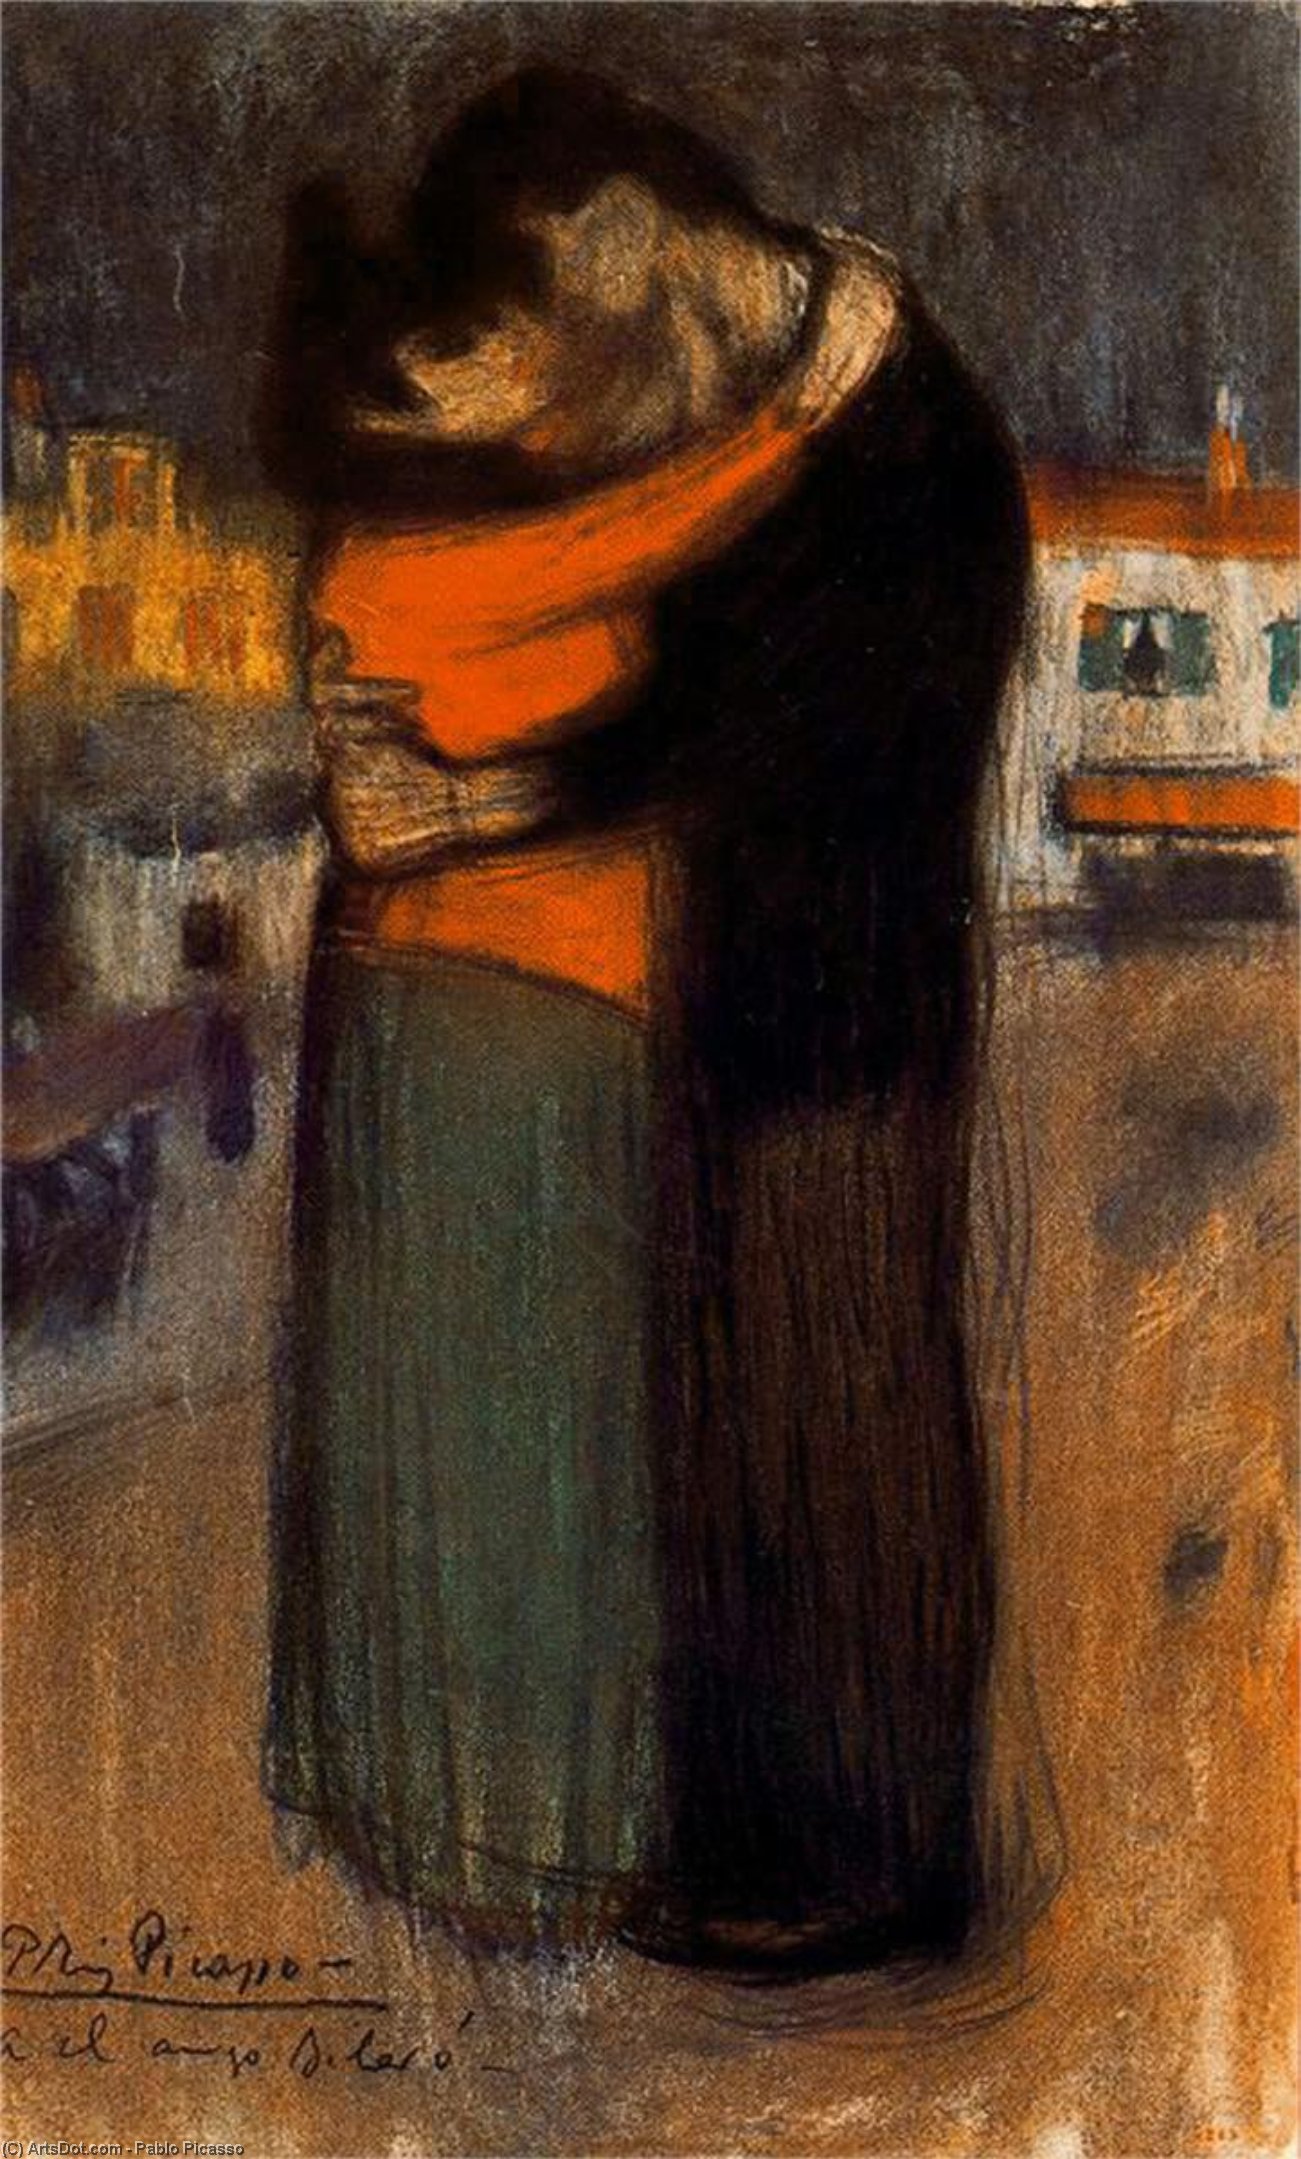 WikiOO.org - Encyclopedia of Fine Arts - Maleri, Artwork Pablo Picasso - Los amantes en la calle